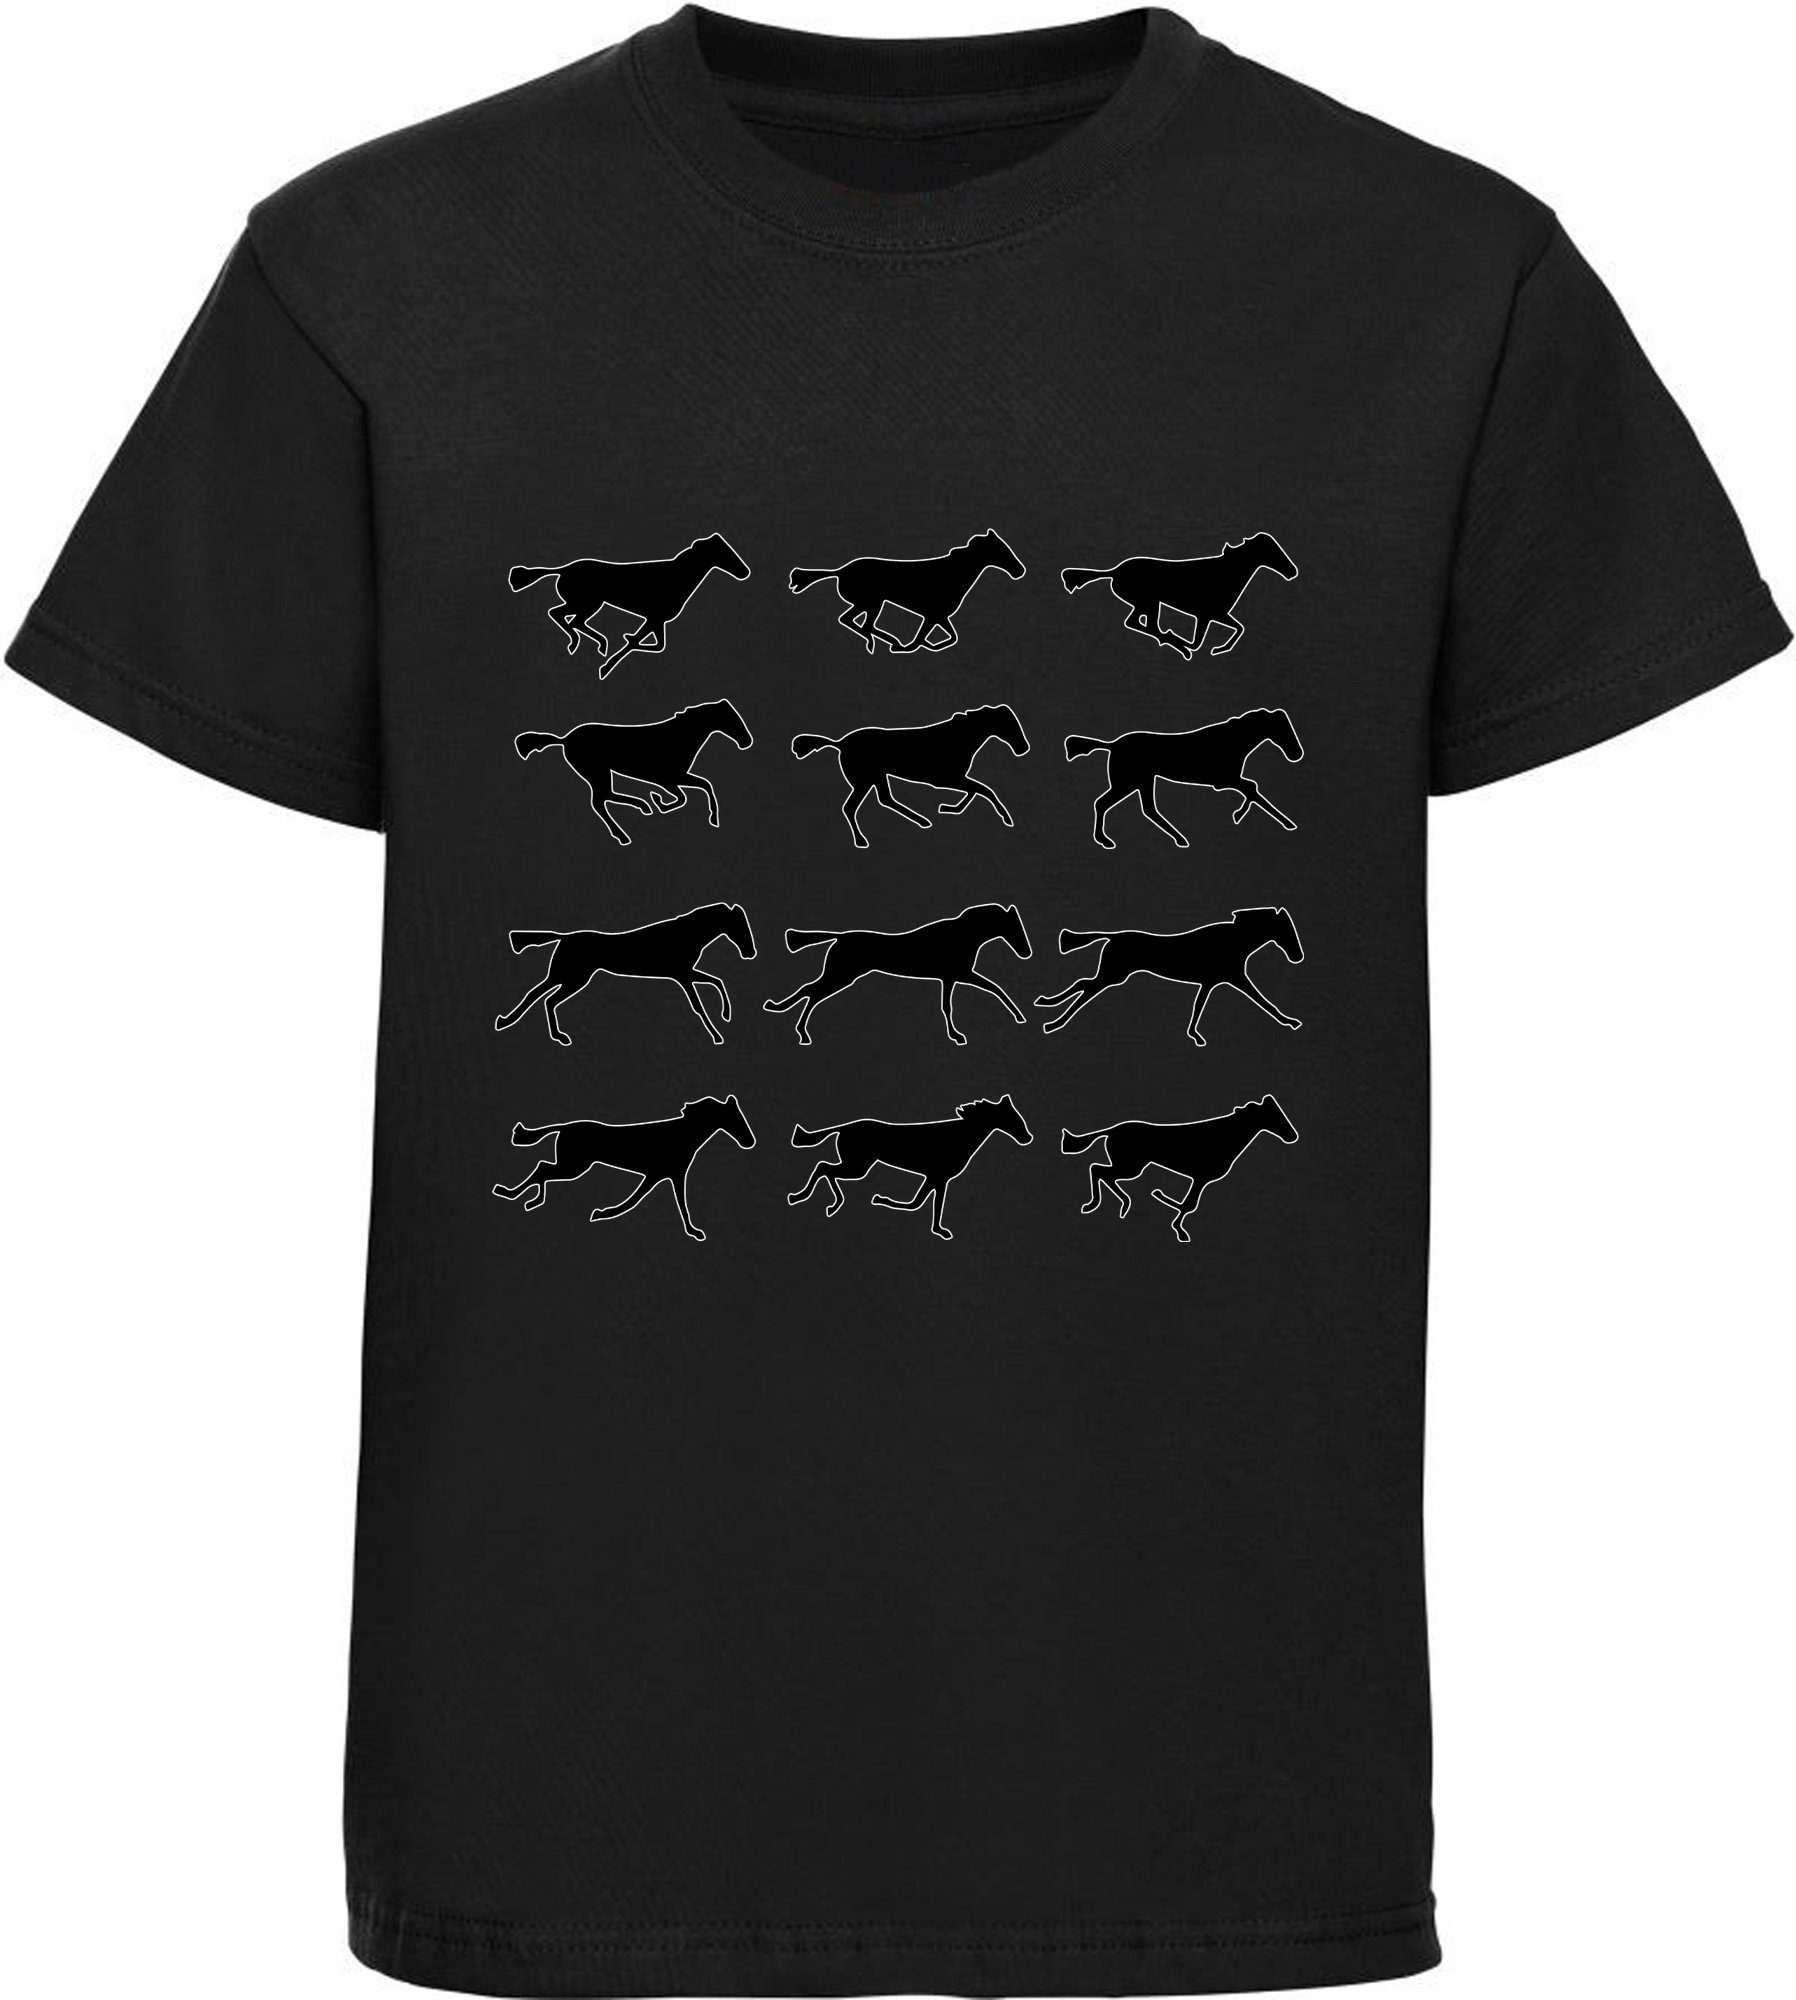 MyDesign24 Print-Shirt bedrucktes Mädchen T-Shirt - Silhouetten von Pferden Baumwollshirt mit Aufdruck, i173 schwarz